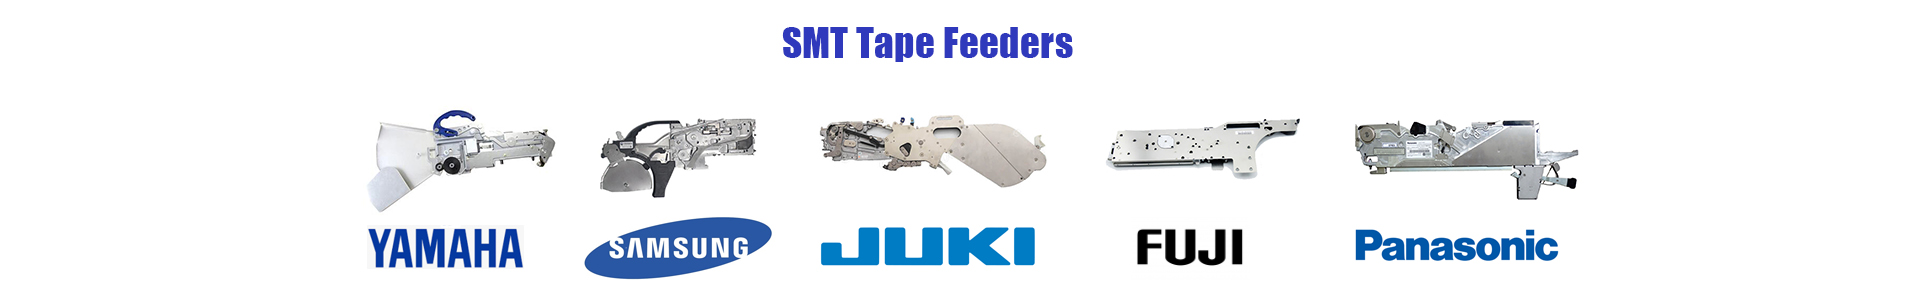 SMT Tape Feeder